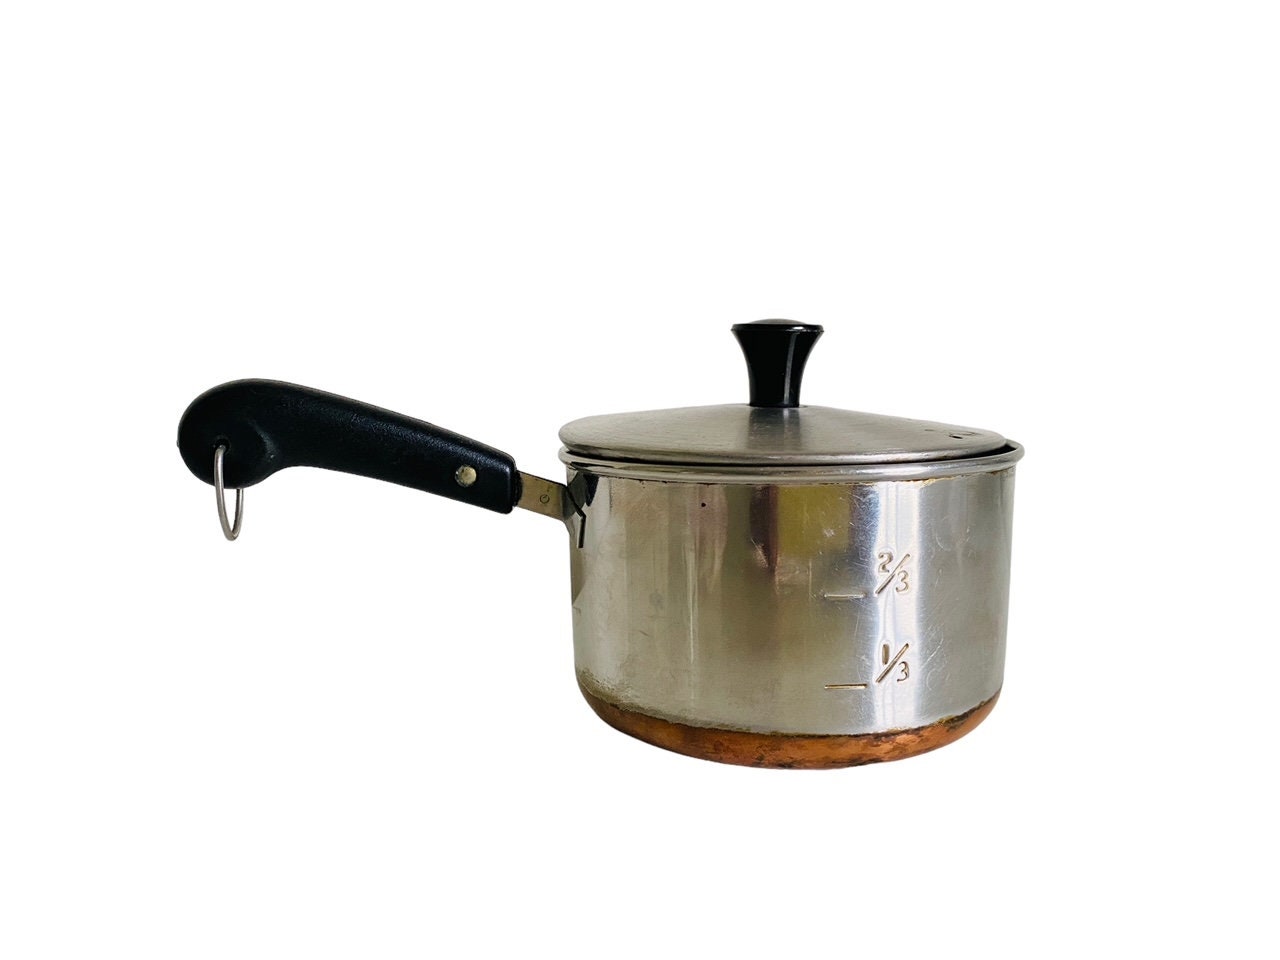 Vintage Revere Ware Copper Bottom Pots Pans Teapot Kitchen Cookware